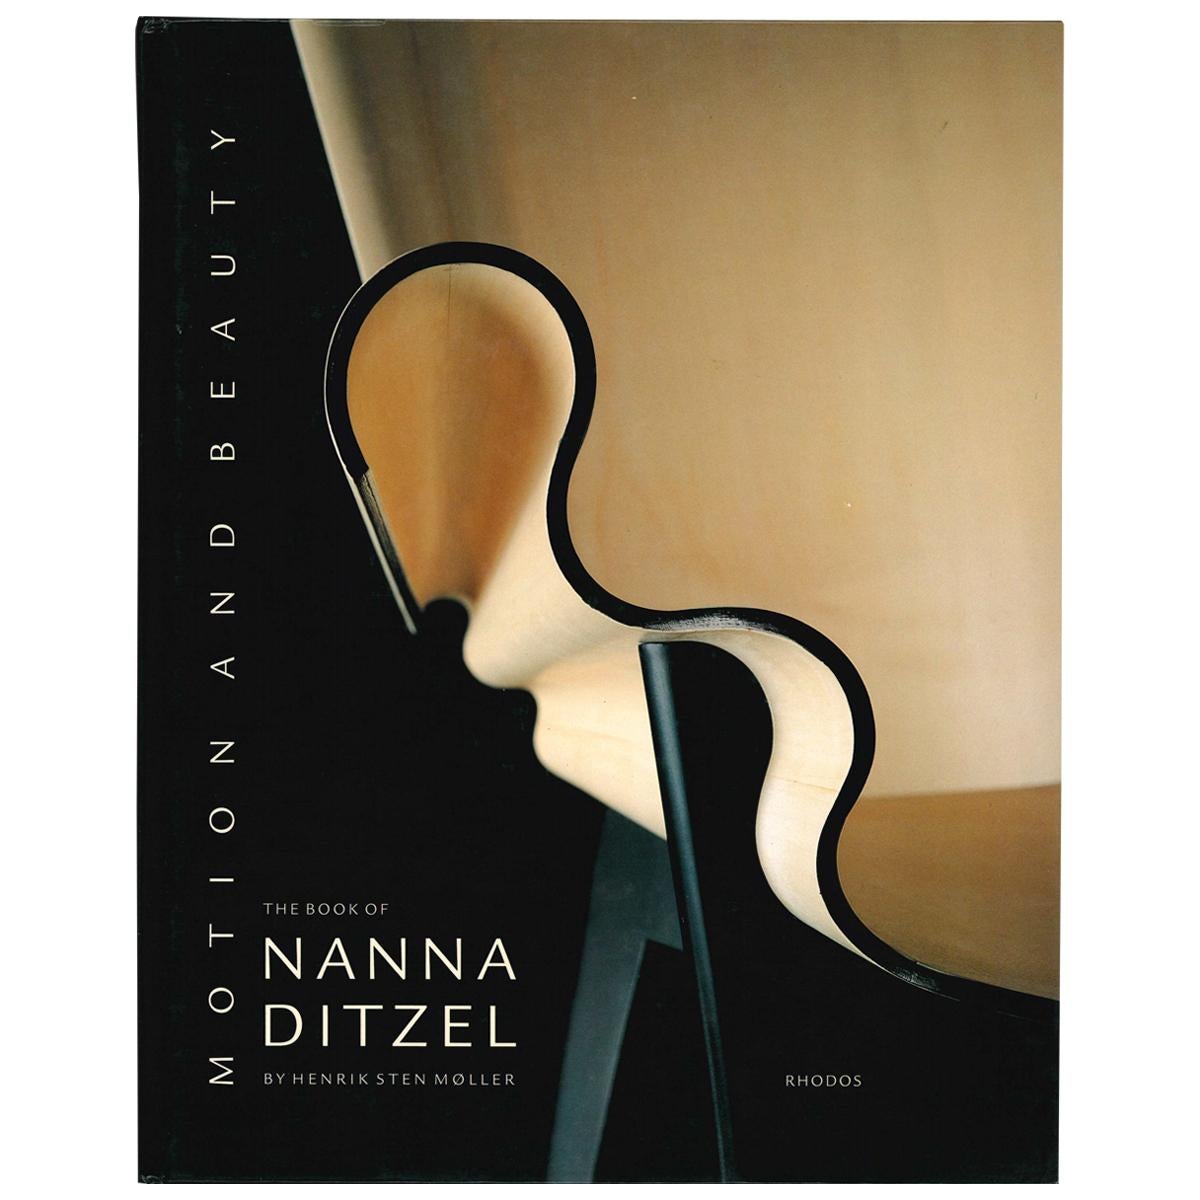 Bewegung und Schönheit: Das Buch von Nanna Ditzel von Henrik Sten Moller (Buch)